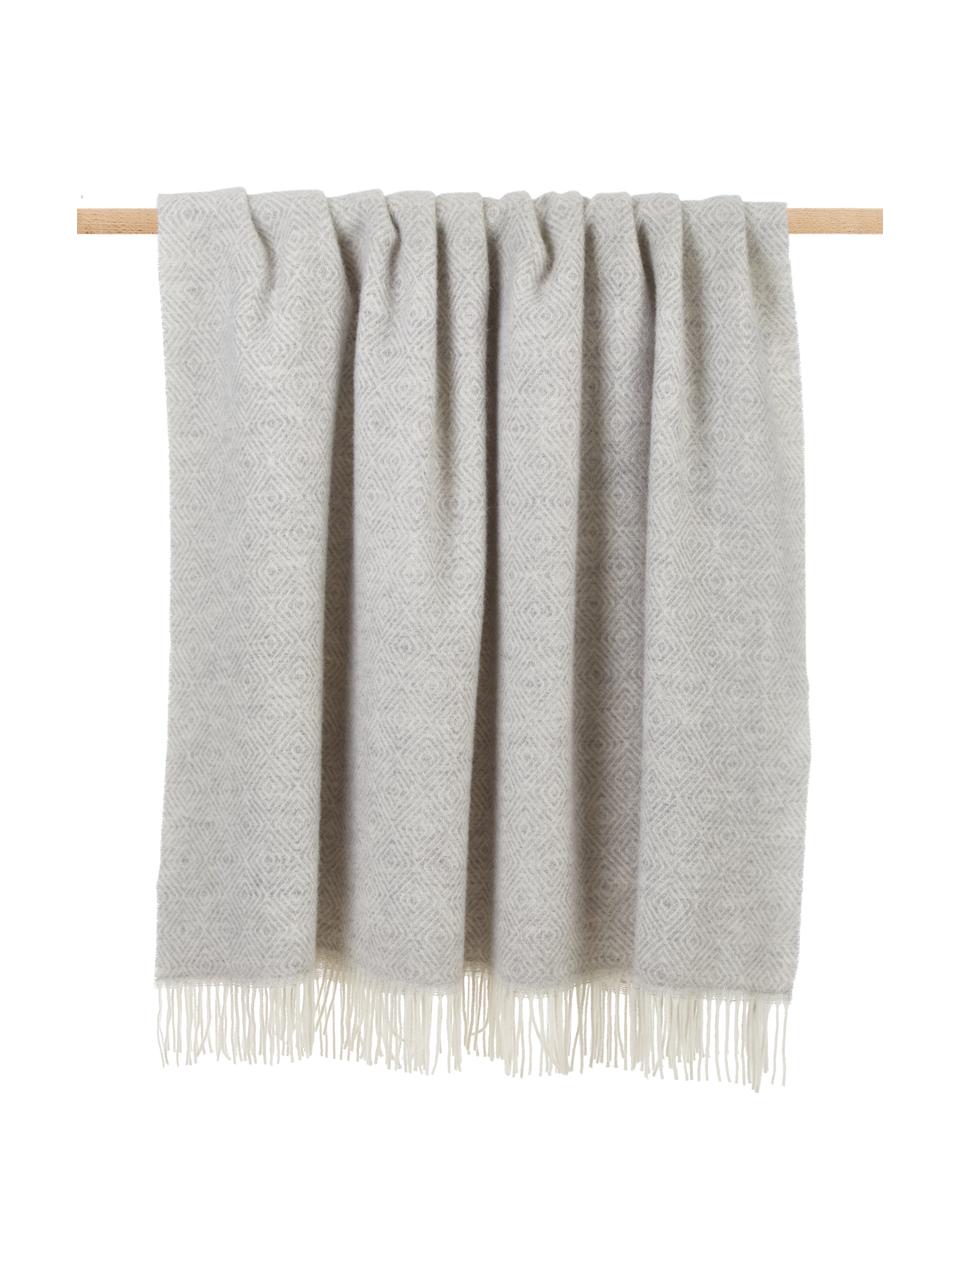 Plaid laine gris clair à franges Tirol-Viktor, Gris clair, blanc, larg. 140 x long. 200 cm